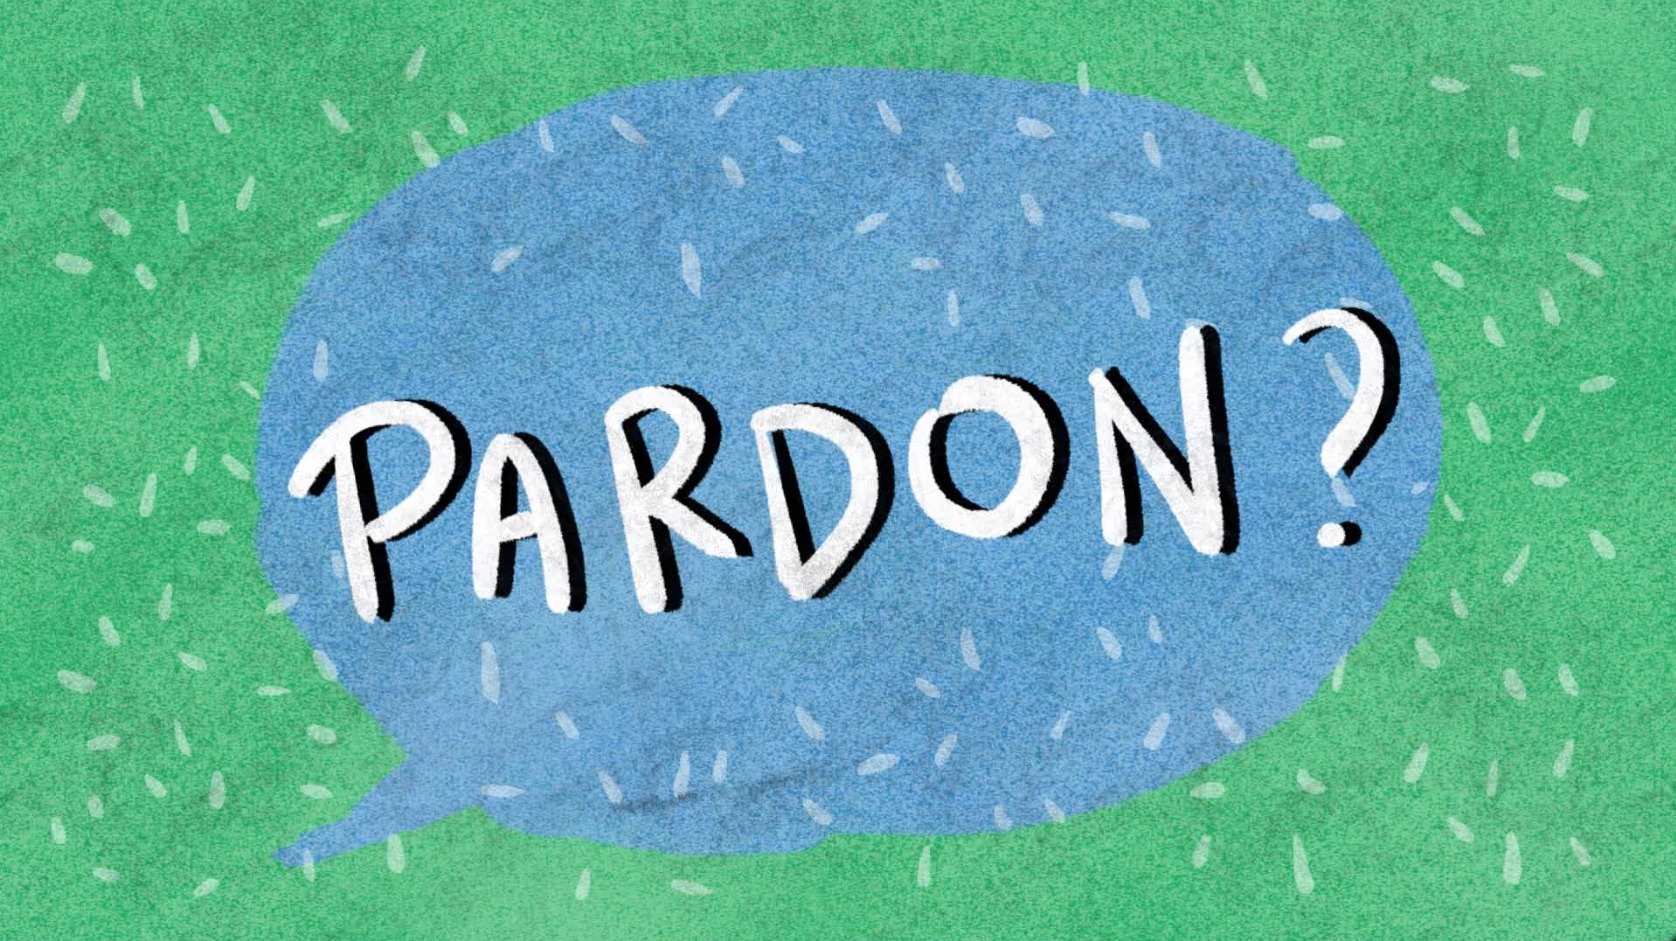 Apprenez des expressions flamandes en français grâce aux dessins animés « Pardon? »